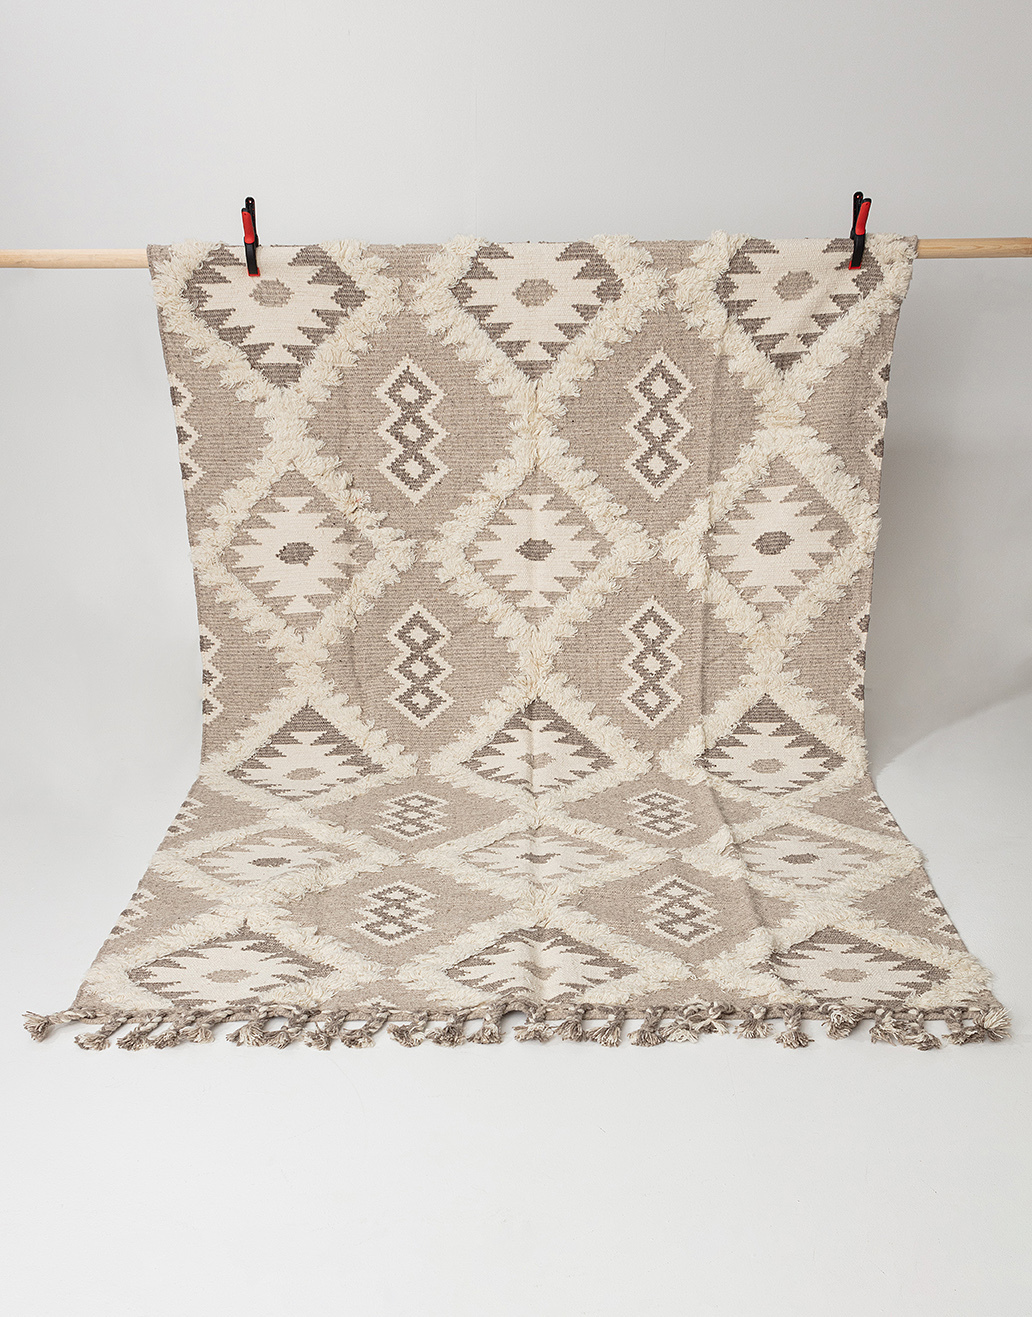 Teppich aus Wollmischung mit Musterung, 200 x 300 cm Image 0